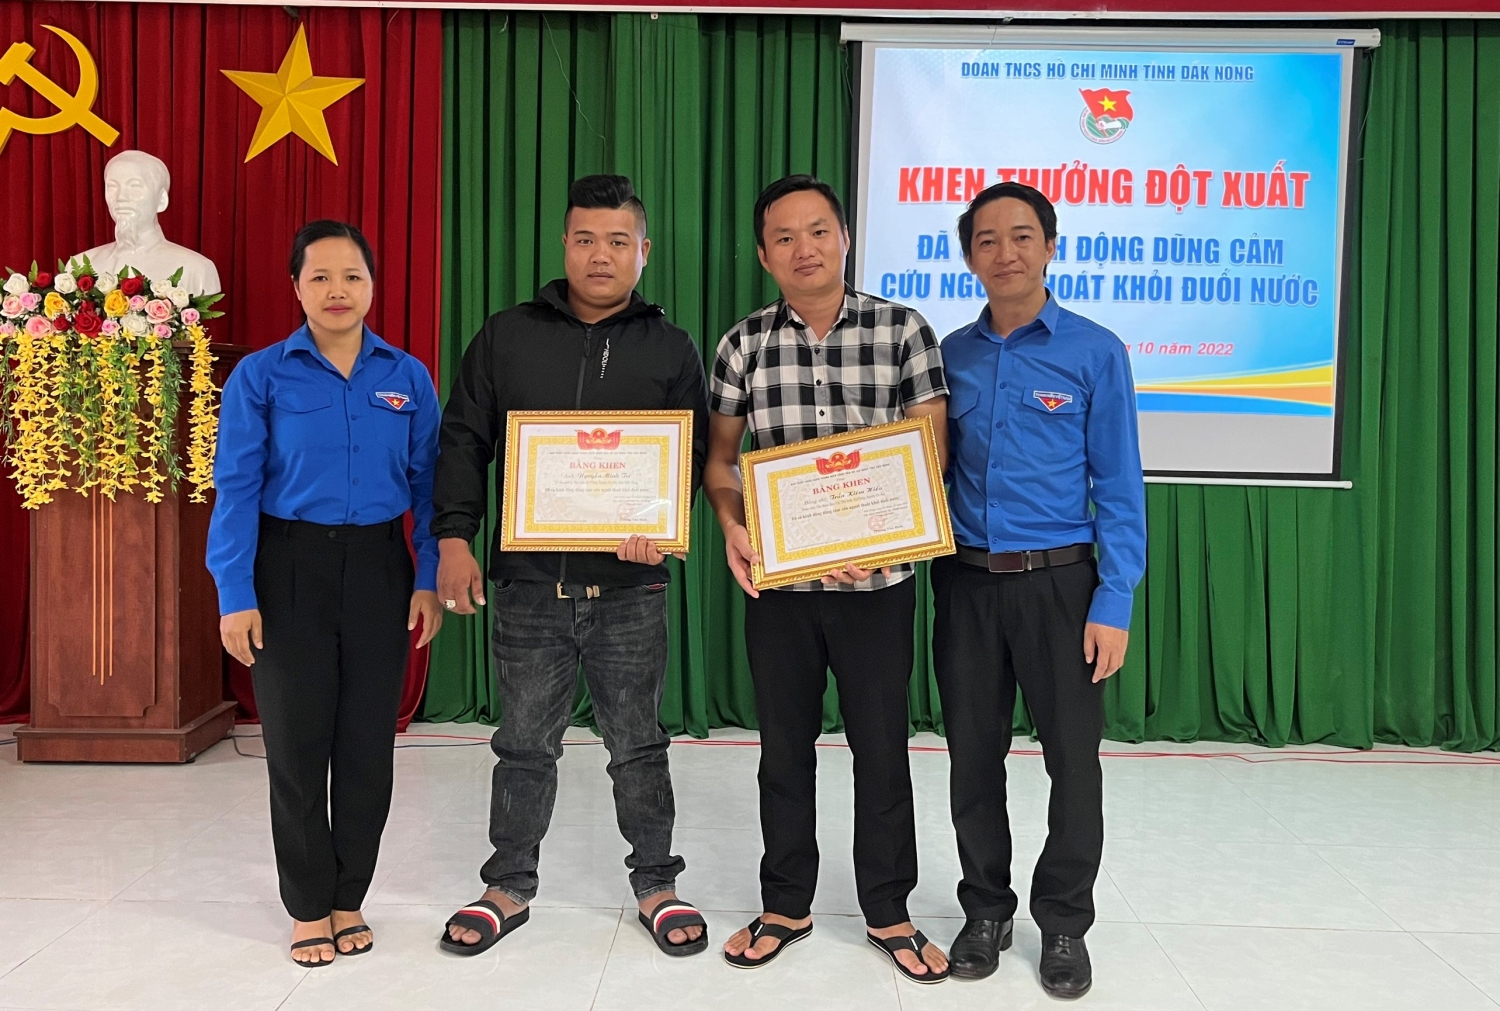 Đồng chí Trương Văn Bình   Phó Bí thư Tỉnh đoàn, Chủ tịch Hội Liên hiệp Thanh niên Việt Nam tỉnh (ngoài cùng bên phải) trao tặng Bằng khen cho 2 thanh niên có hành động dũng cảm